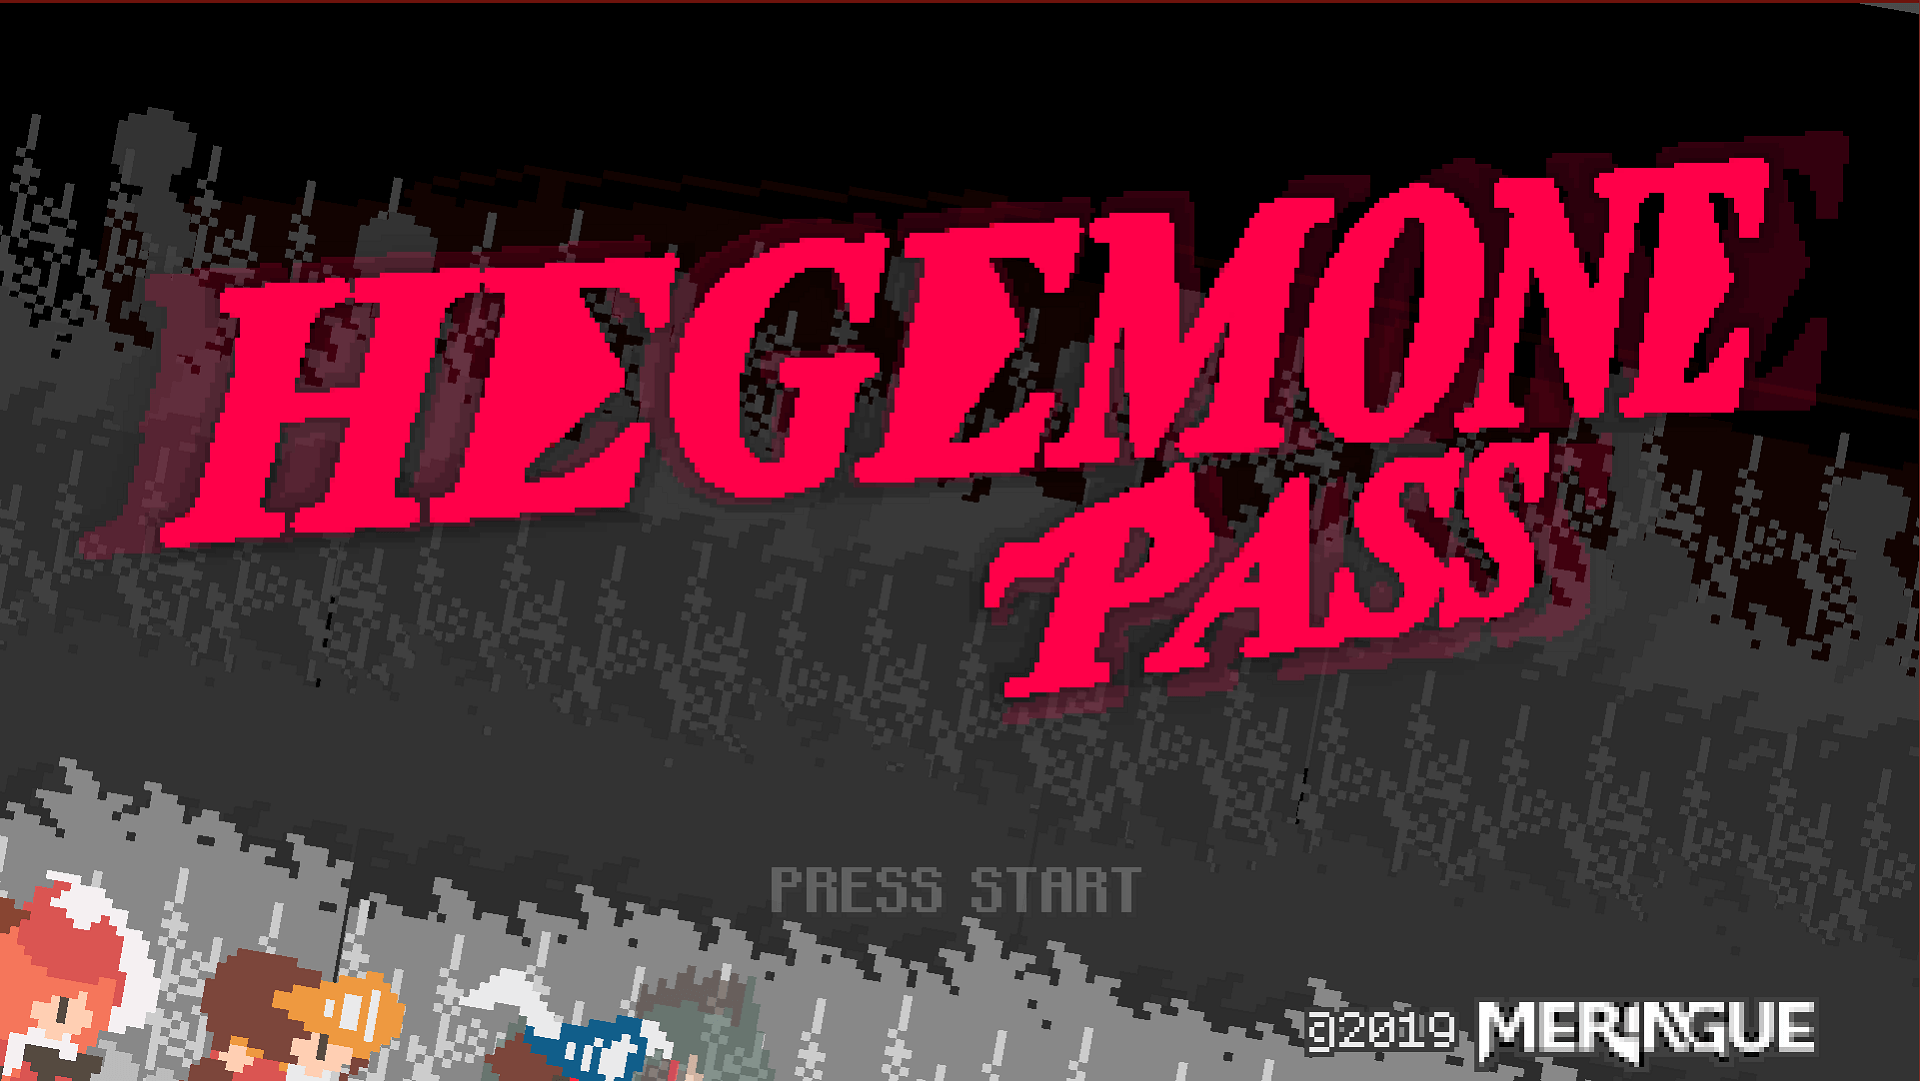 Hegemone Pass Featured Image